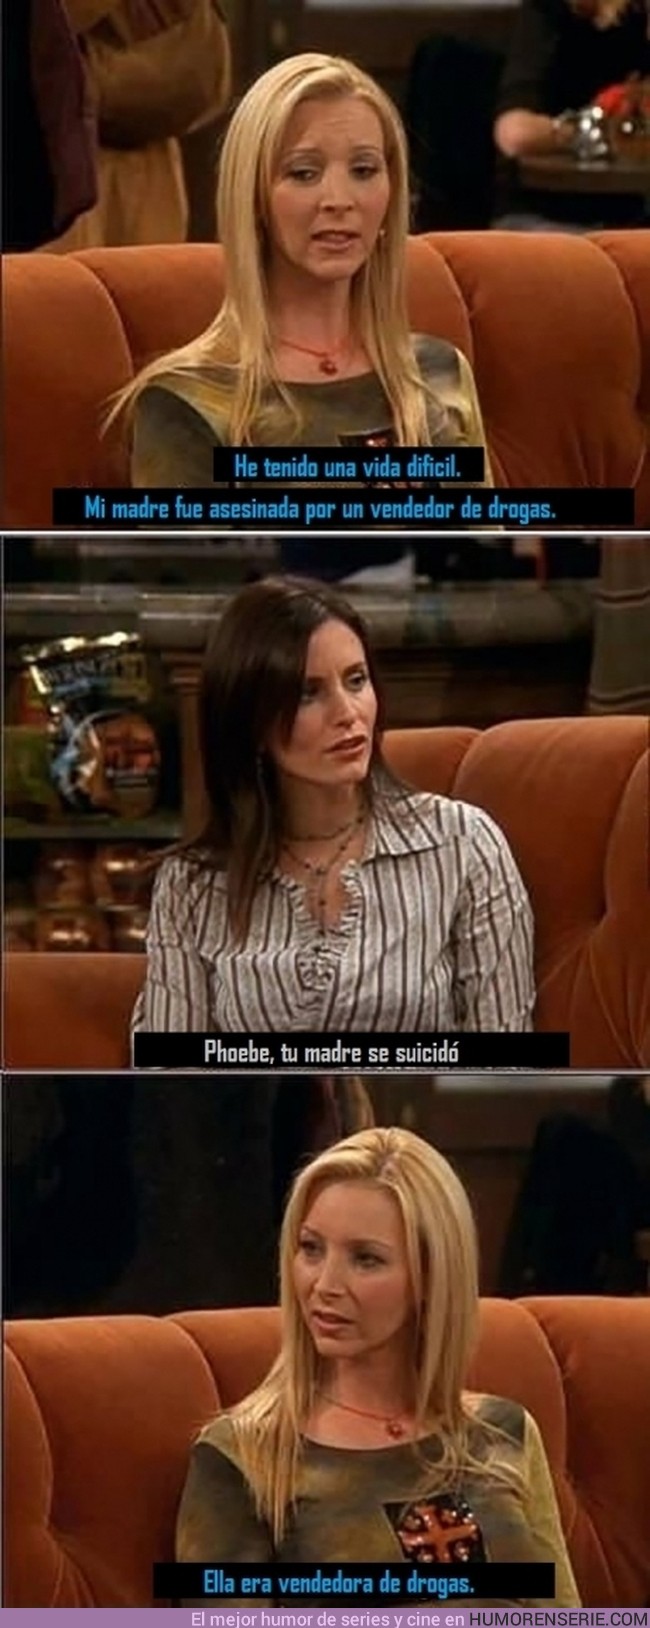 447 - La muerte de la madre de Phoebe en Friends - Aún así ha sido una vida trágica